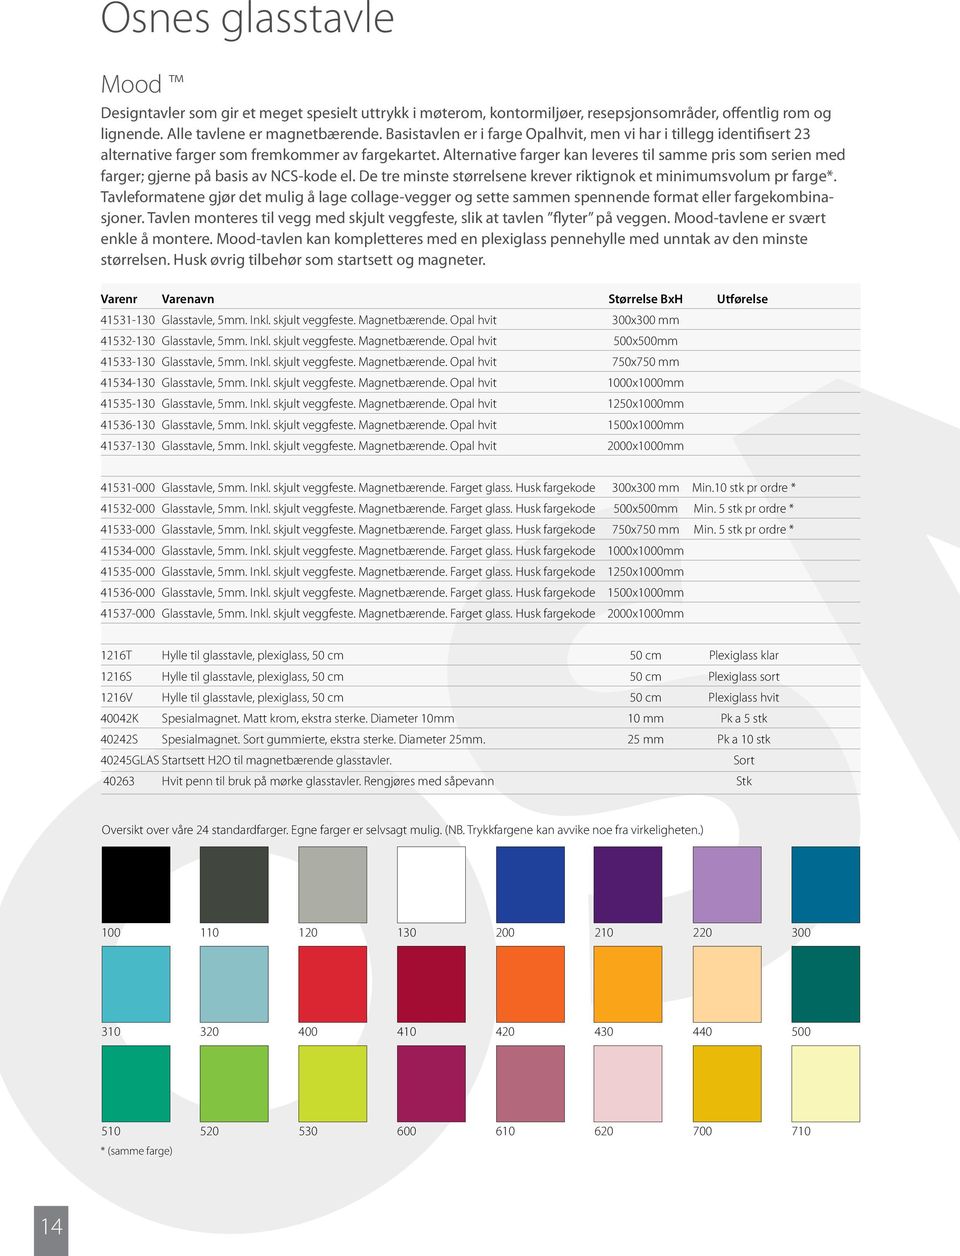 Alternative farger kan leveres til samme pris som serien med farger; gjerne på basis av NCS-kode el. De tre minste størrelsene krever riktignok et minimumsvolum pr farge*.